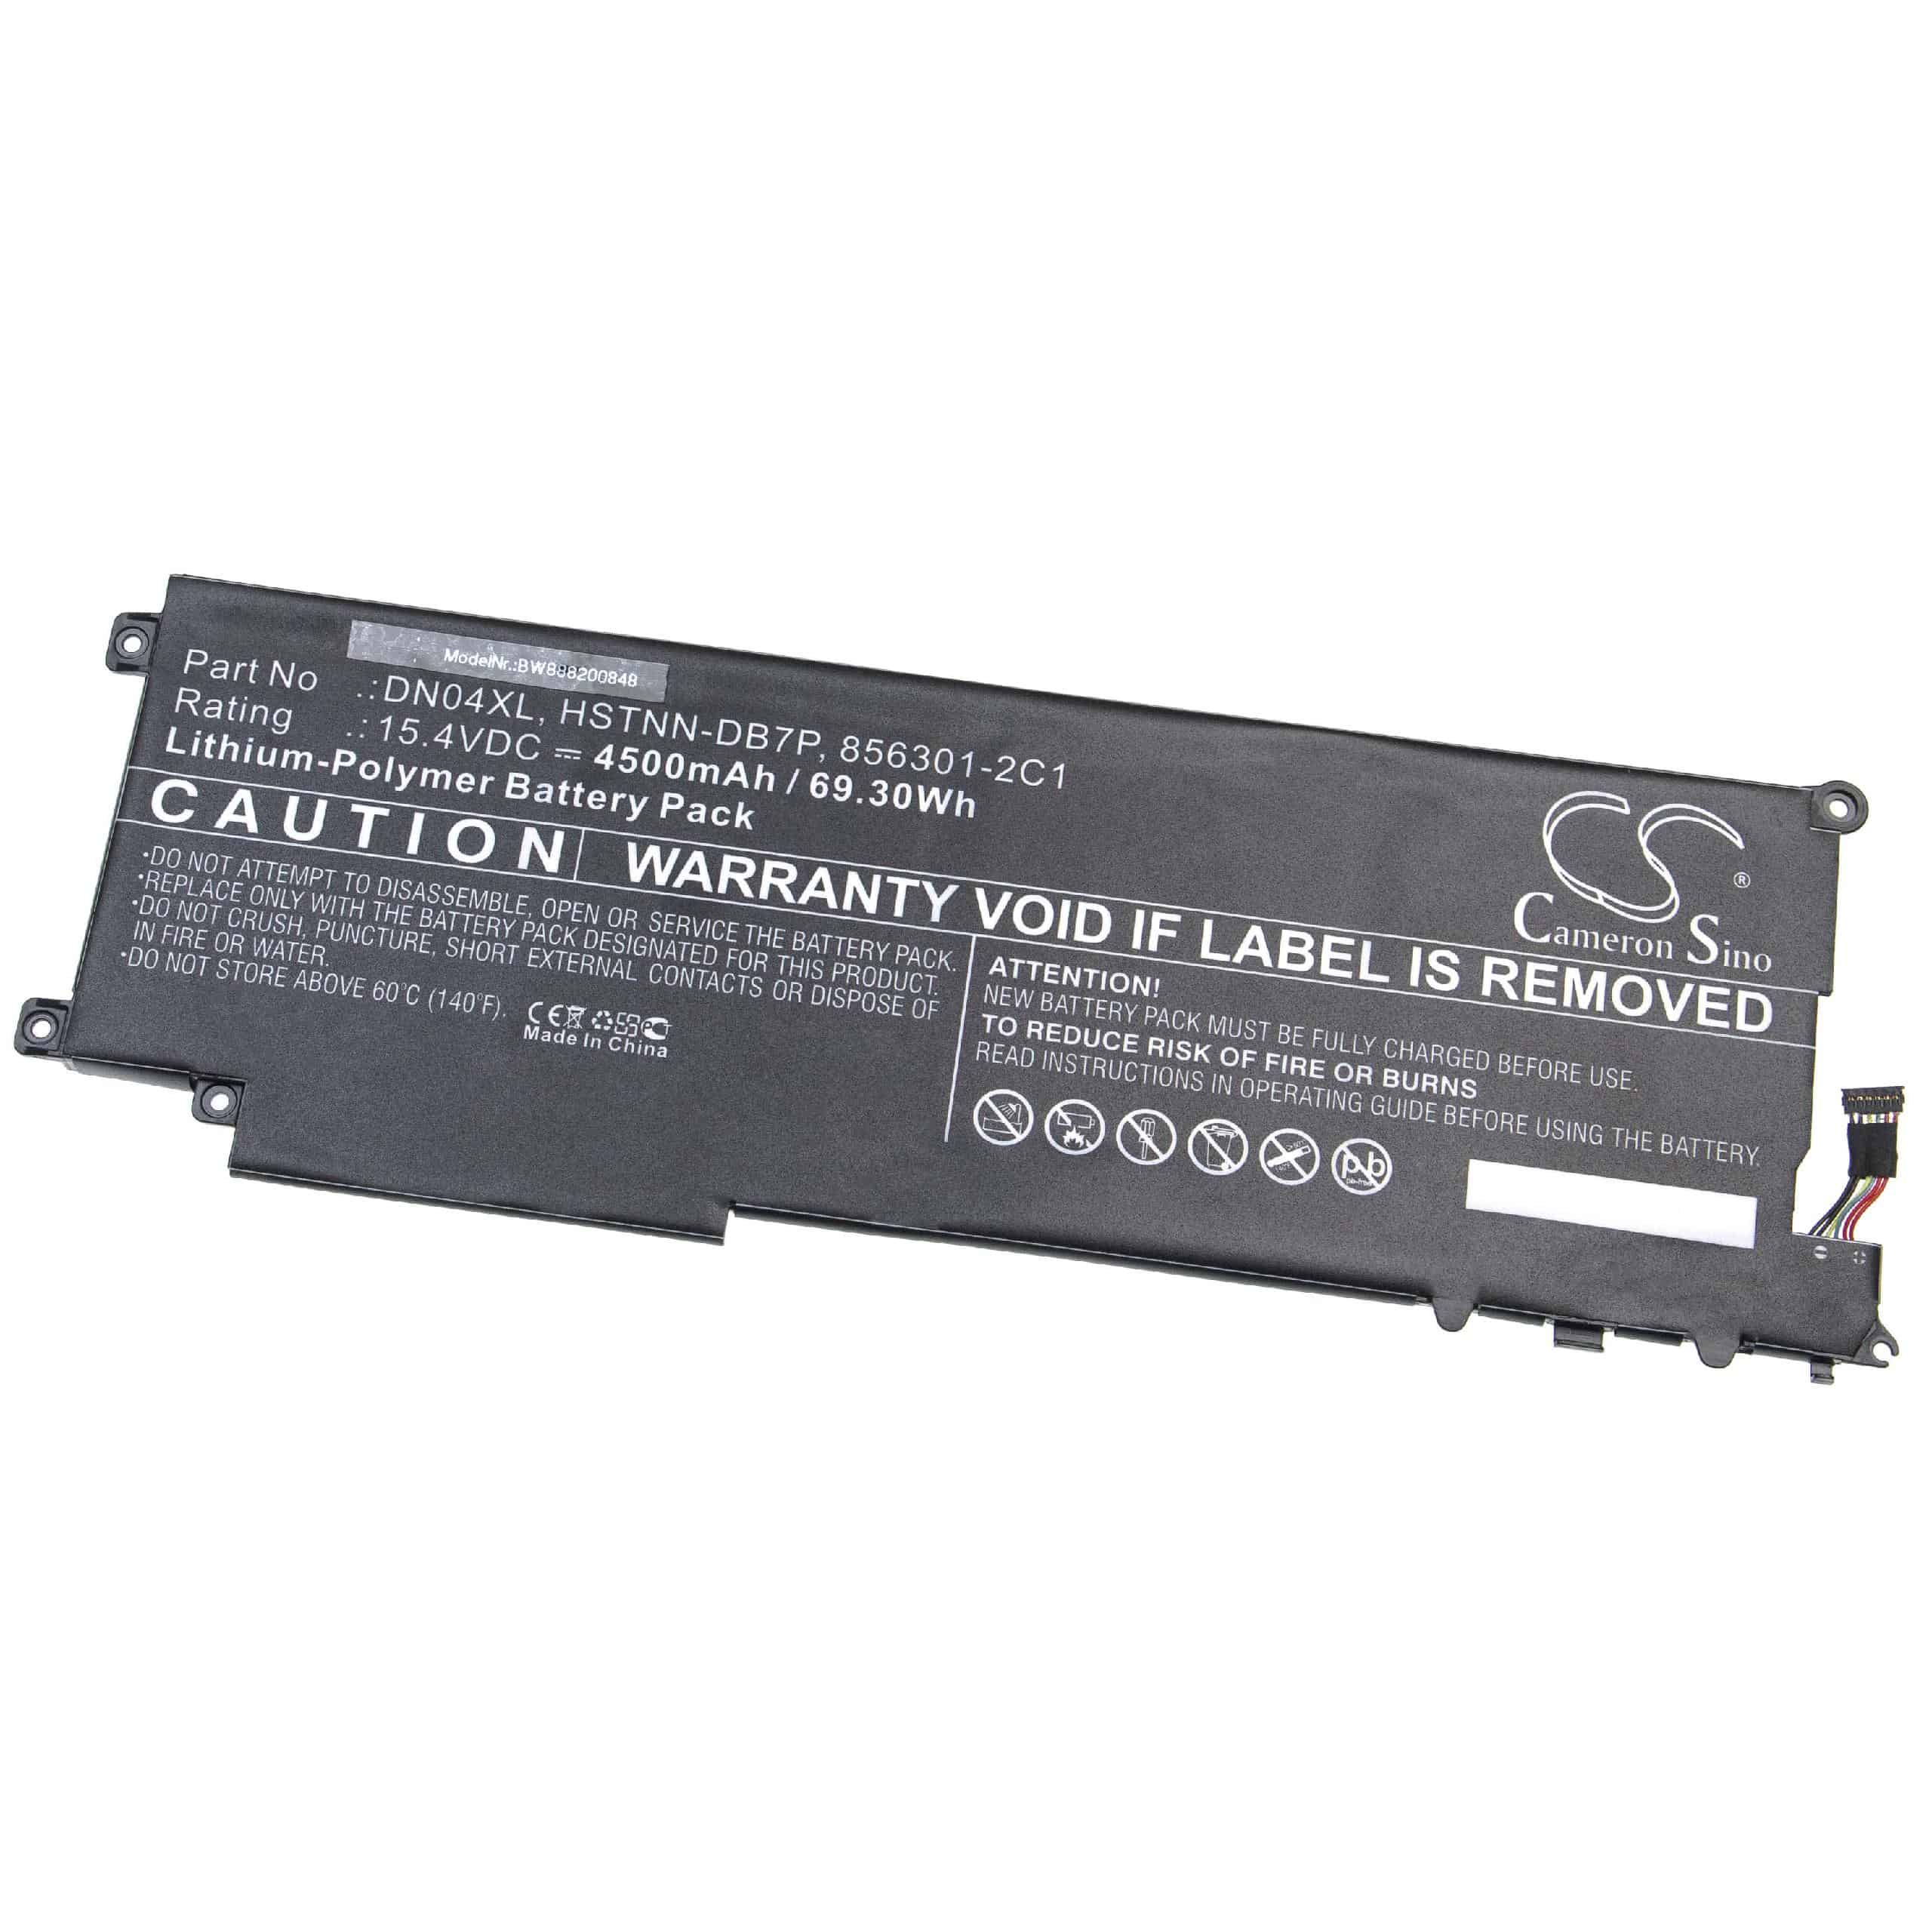 Batterie remplace HP 856543-855, 856301-2C1 pour ordinateur portable - 4500mAh 15,4V Li-polymère, noir